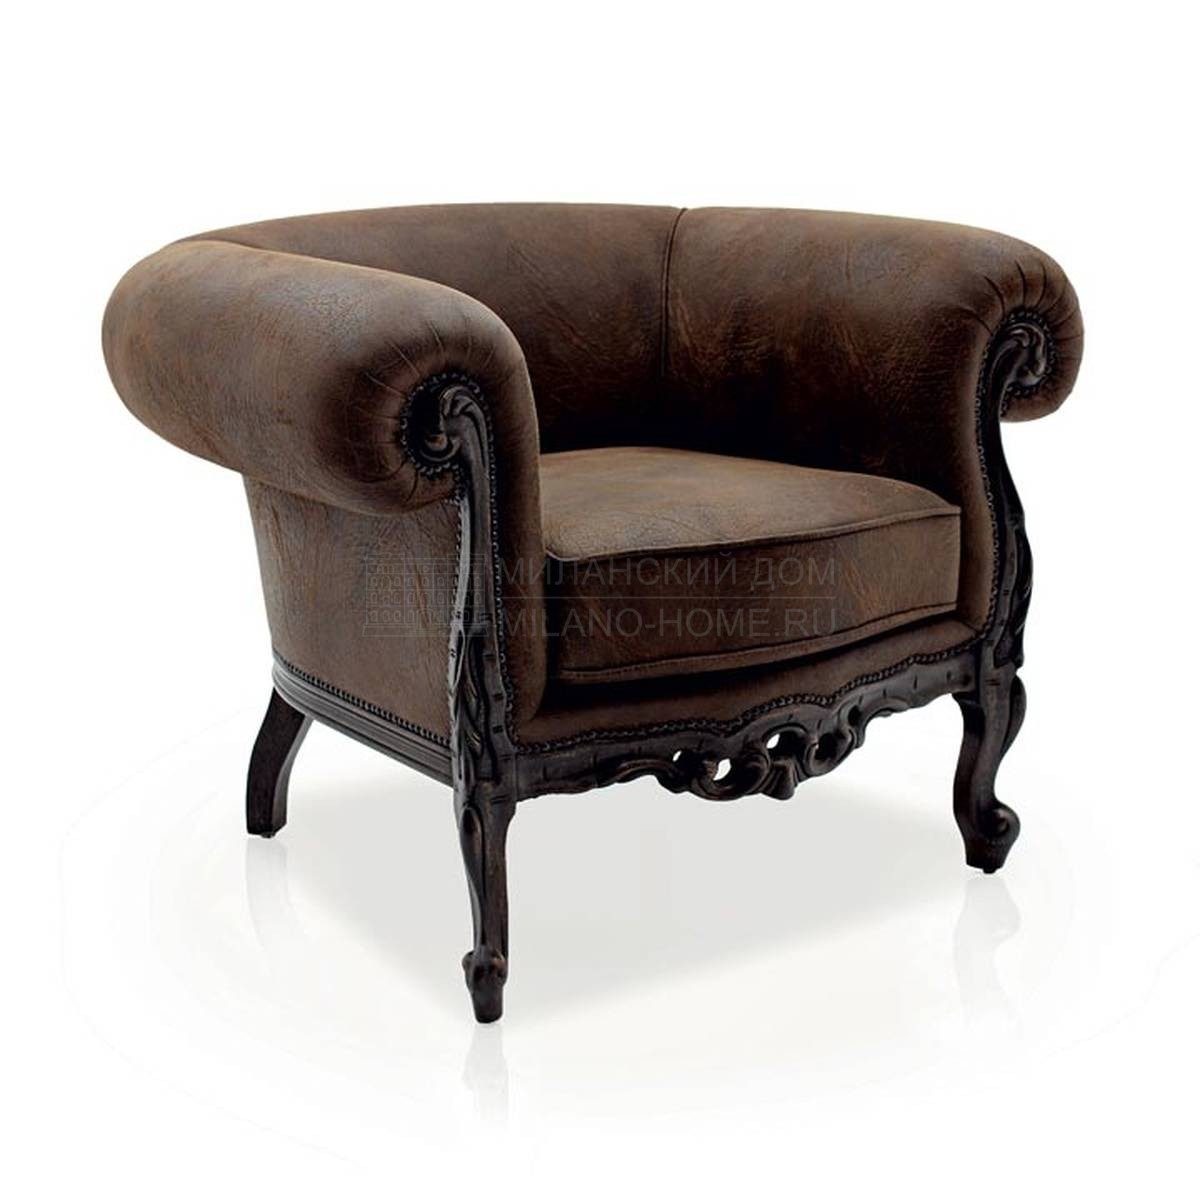 Кожаное кресло Febo leather из Италии фабрики SEVEN SEDIE